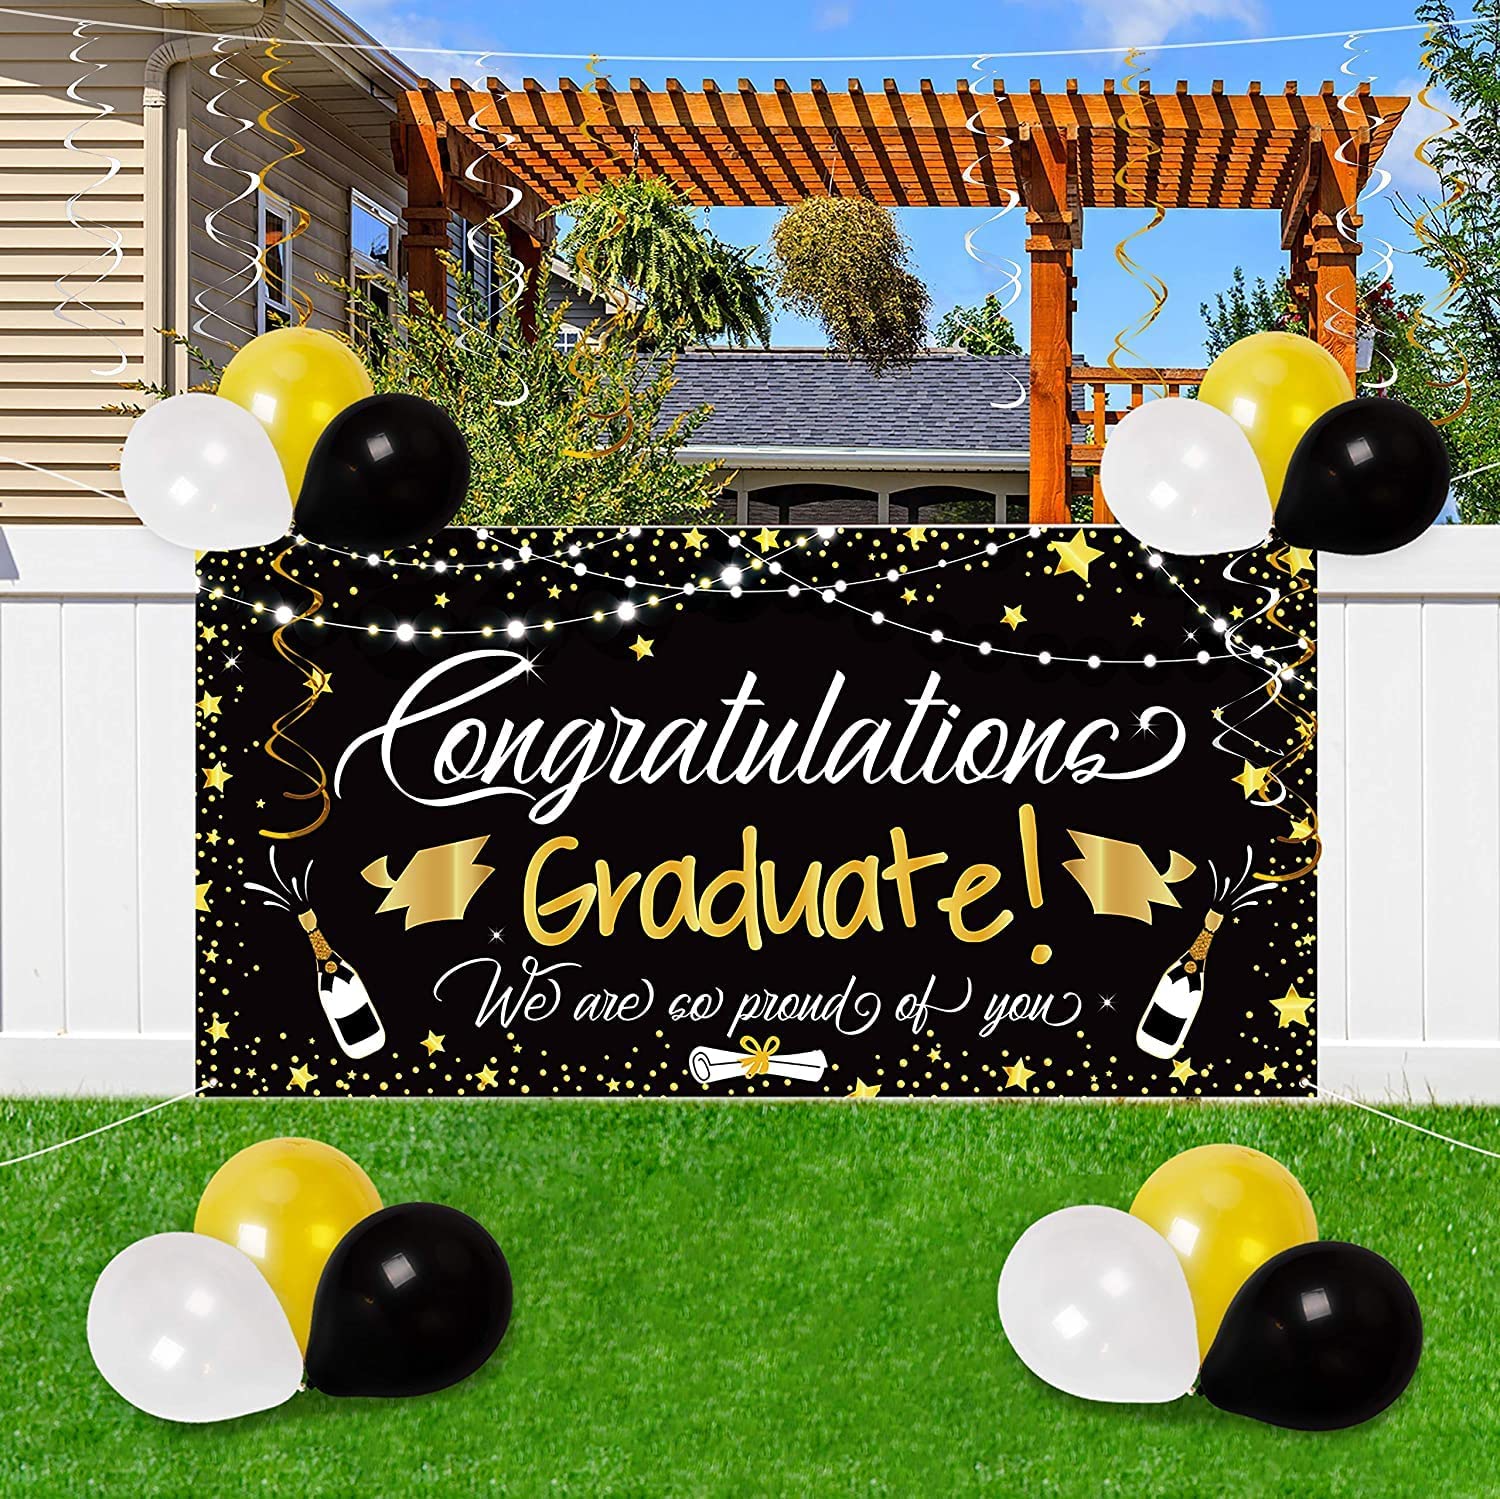 بوستر و زينة حفلات التخرج من بالونات ولافتة خلفية كبيرة للتهنئة بالتخرج